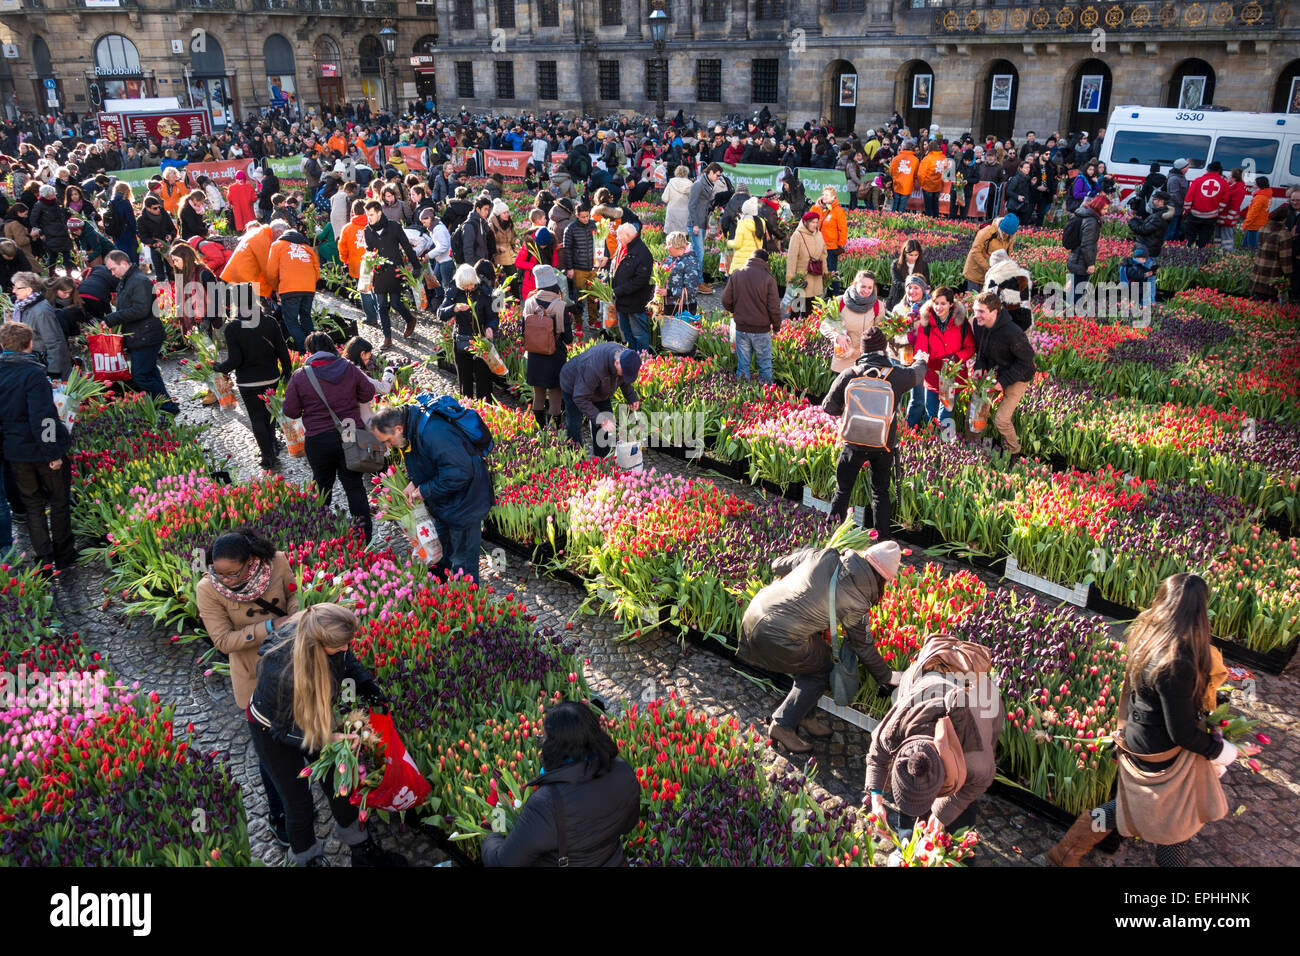 Nazionale di Amsterdam Tulip giorno 10.000 visitatori pick 200.000 tulipani gratuitamente per celebrare la partenza del funzionario Tulip stagione Foto Stock